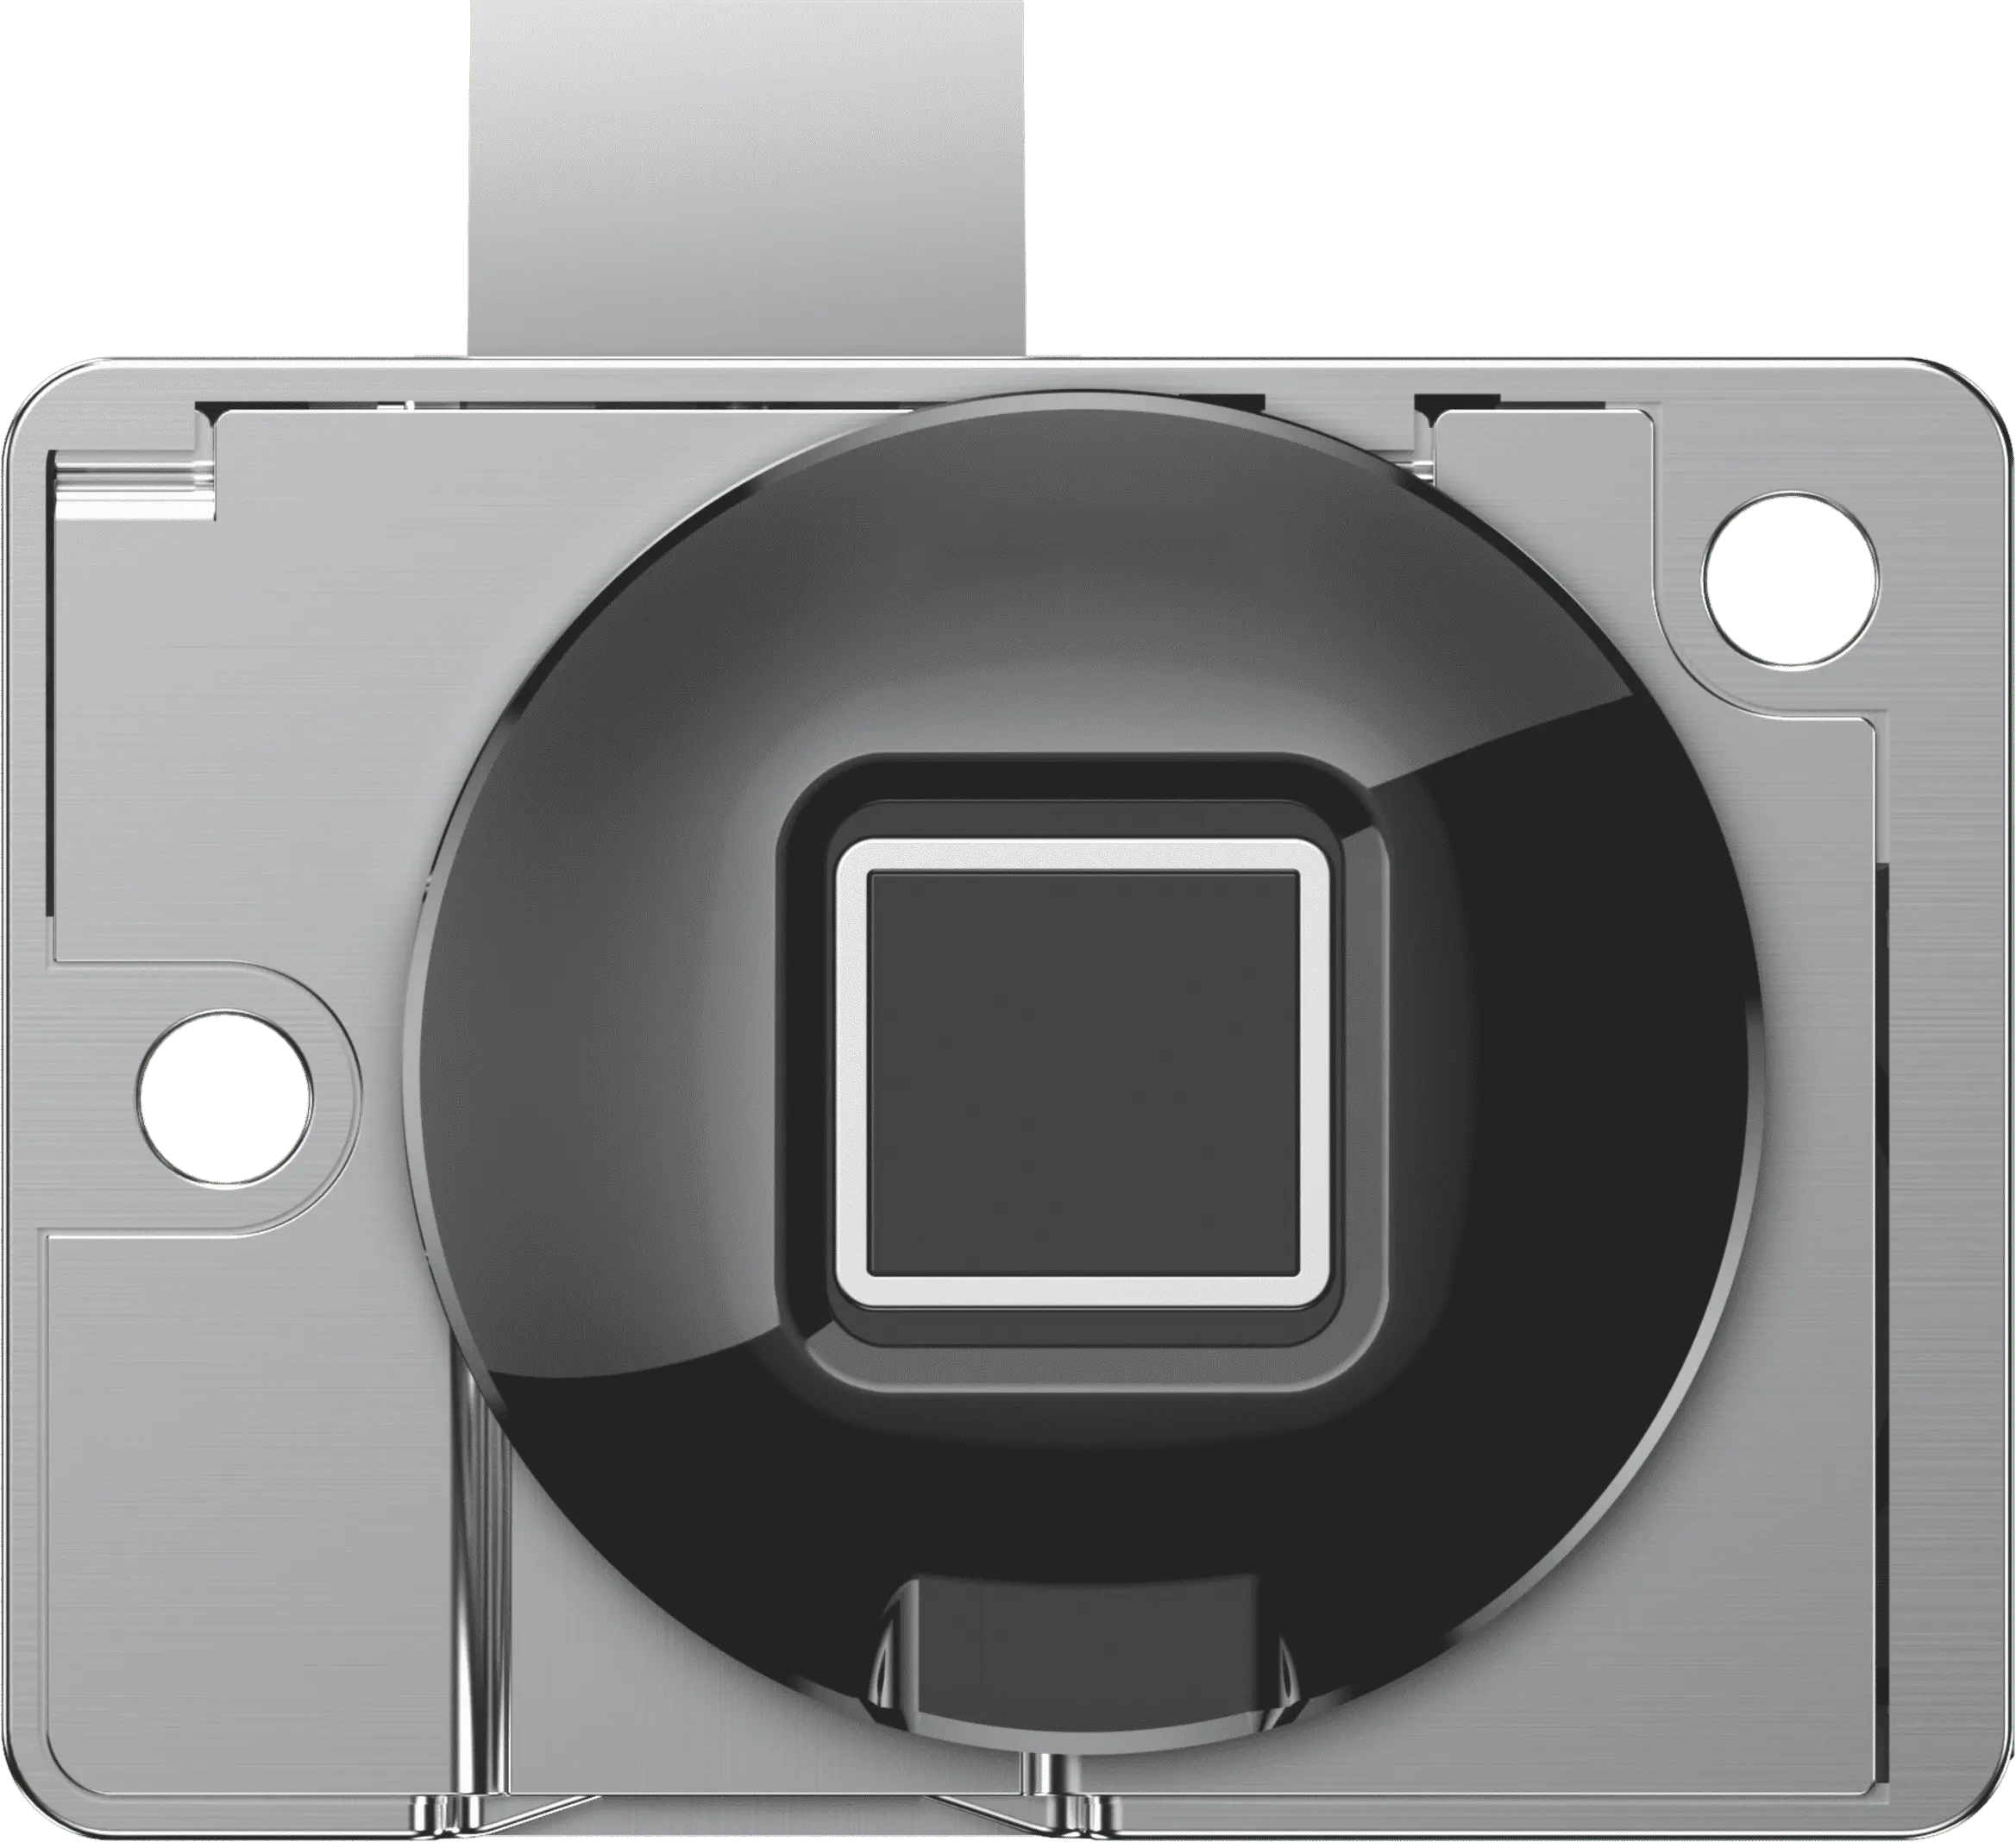 Cerradura de huella dactilar de cajón inteligente Cerradura inteligente minimalista moderna USB Cerradura inteligente Micro